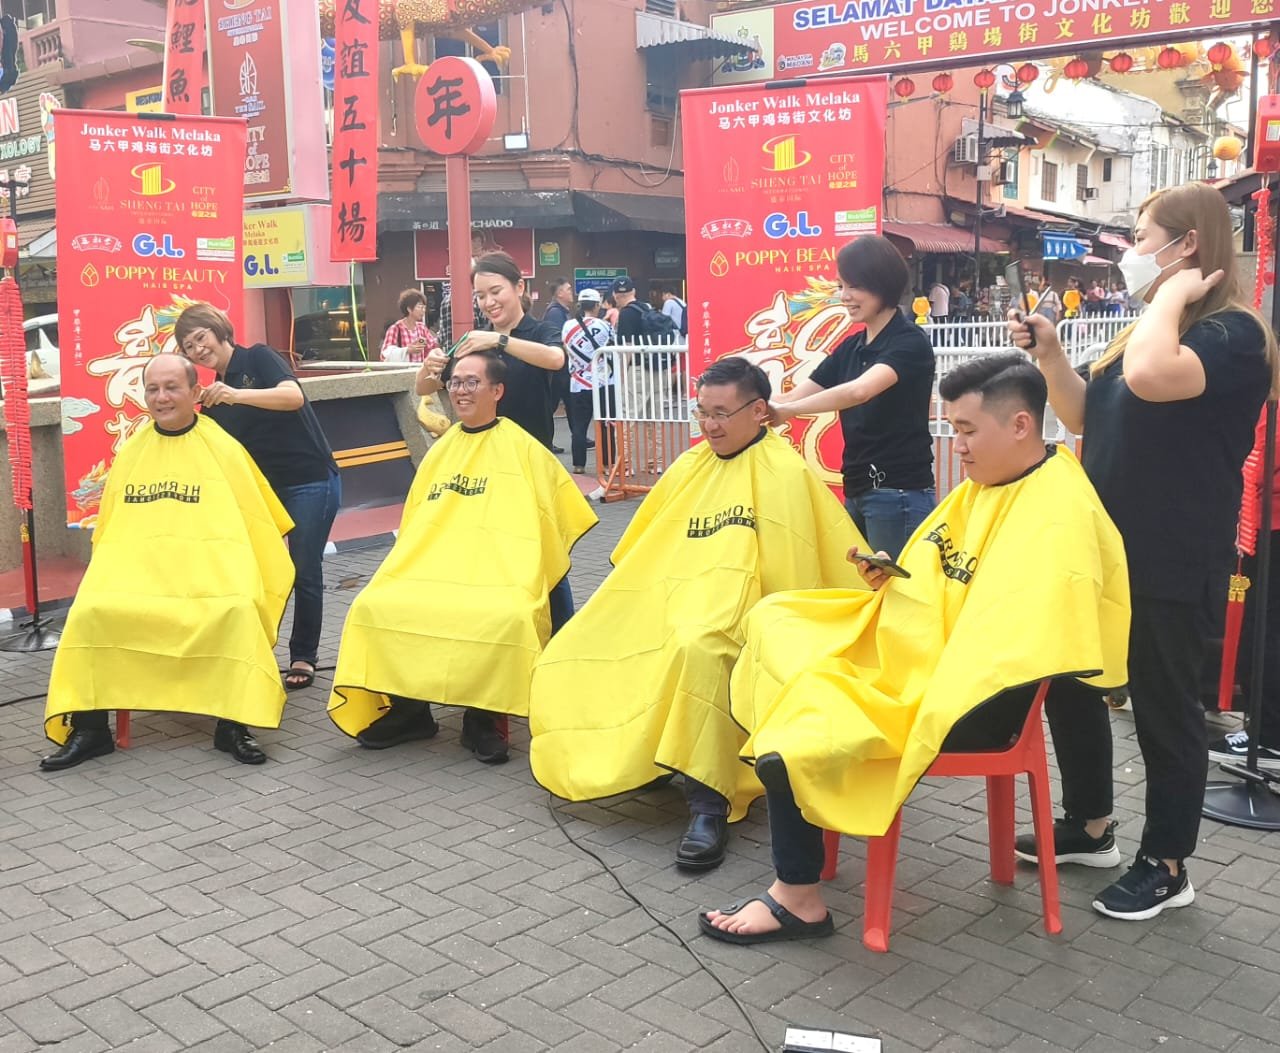 嘉宾和民众剪下一小撮头发，希望可迎接好运，左起为李传财、刘志俍、颜天禄。